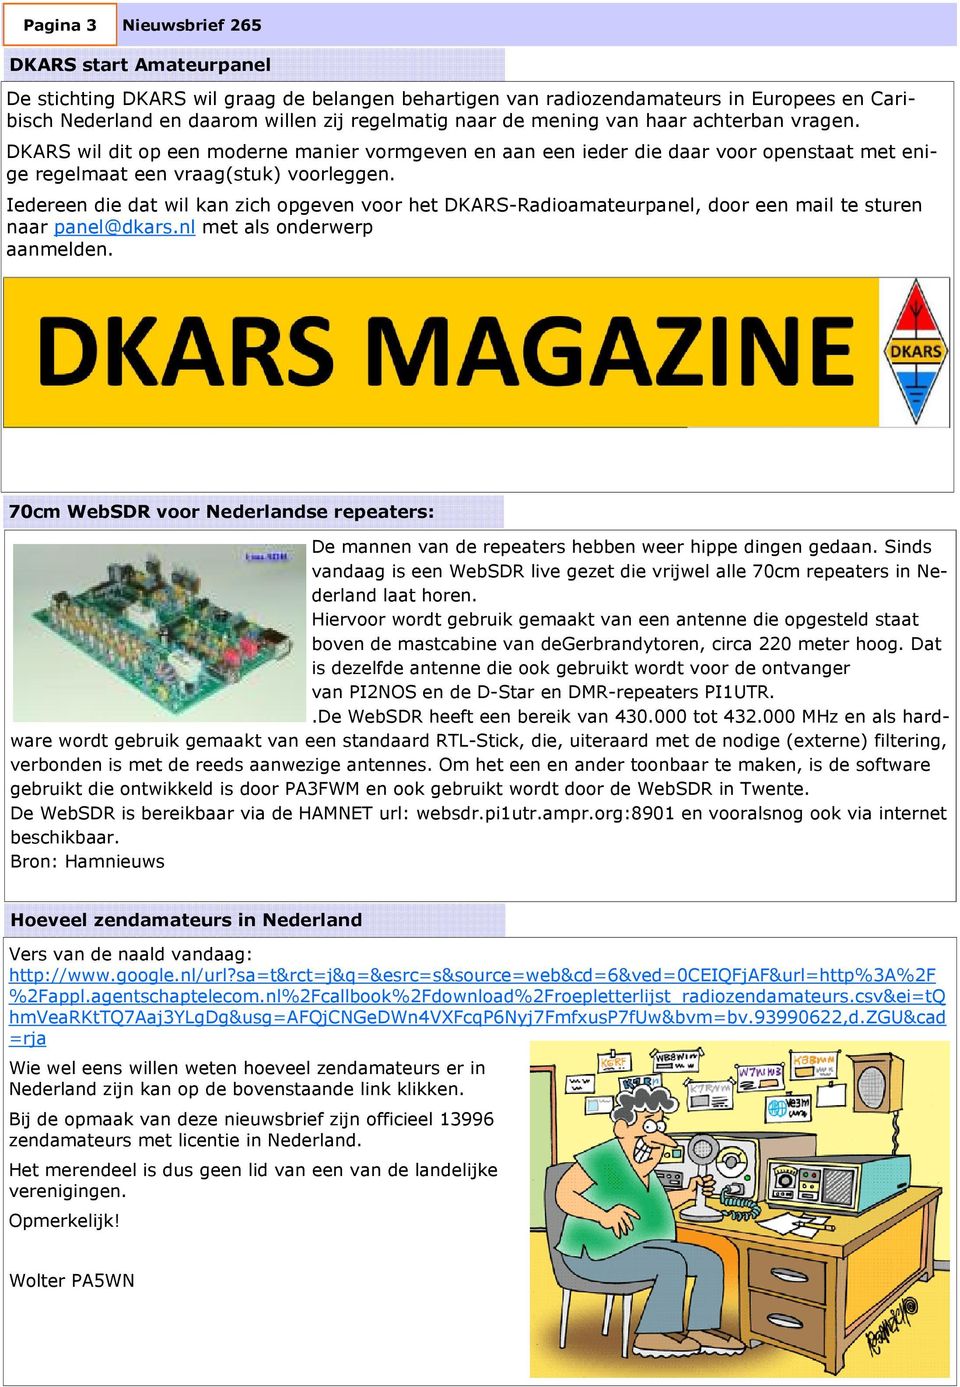 Iedereen die dat wil kan zich opgeven voor het DKARS-Radioamateurpanel, door een mail te sturen naar panel@dkars.nl met als onderwerp aanmelden.